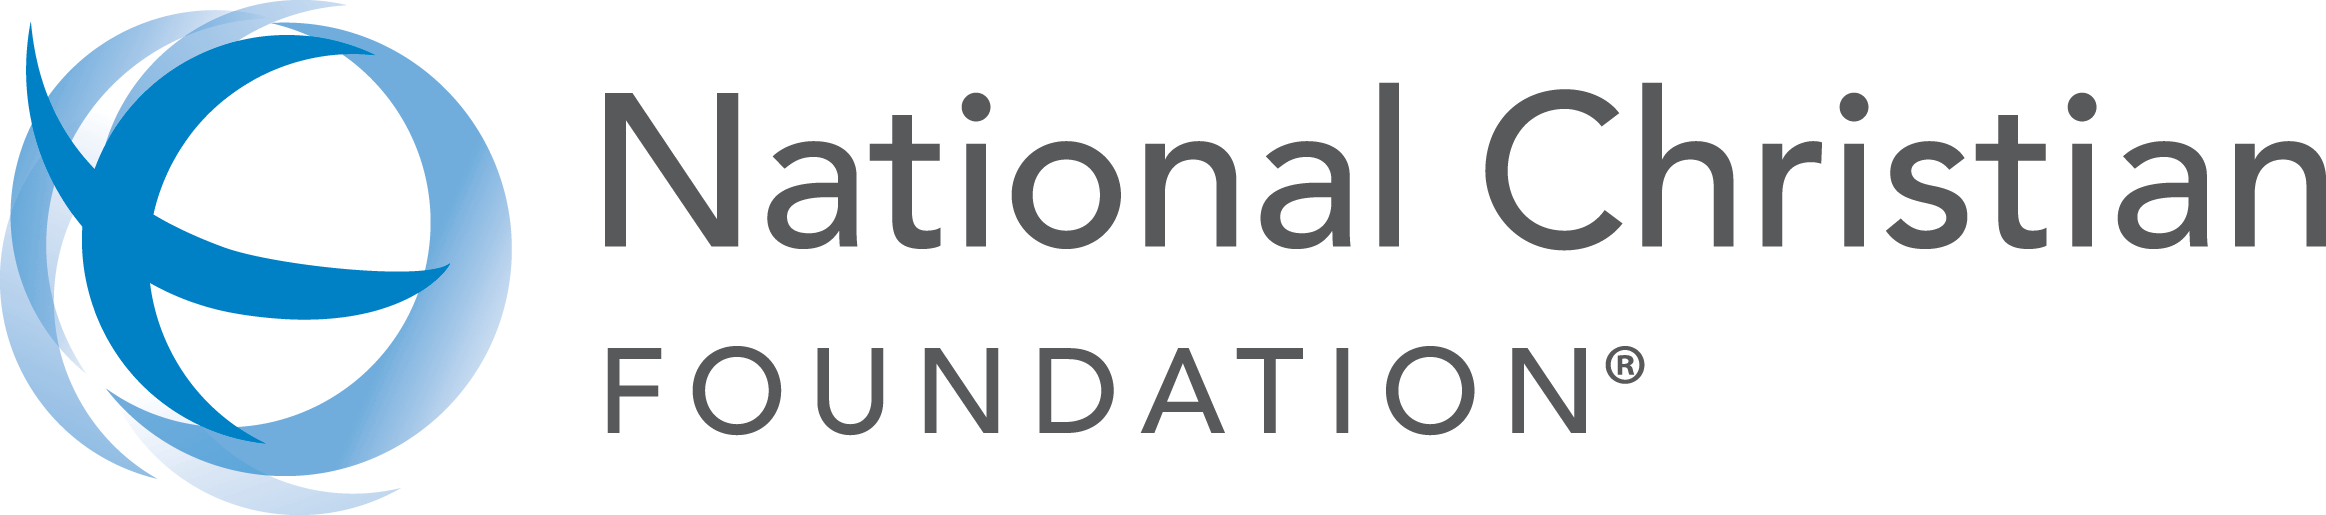 ncf_logo